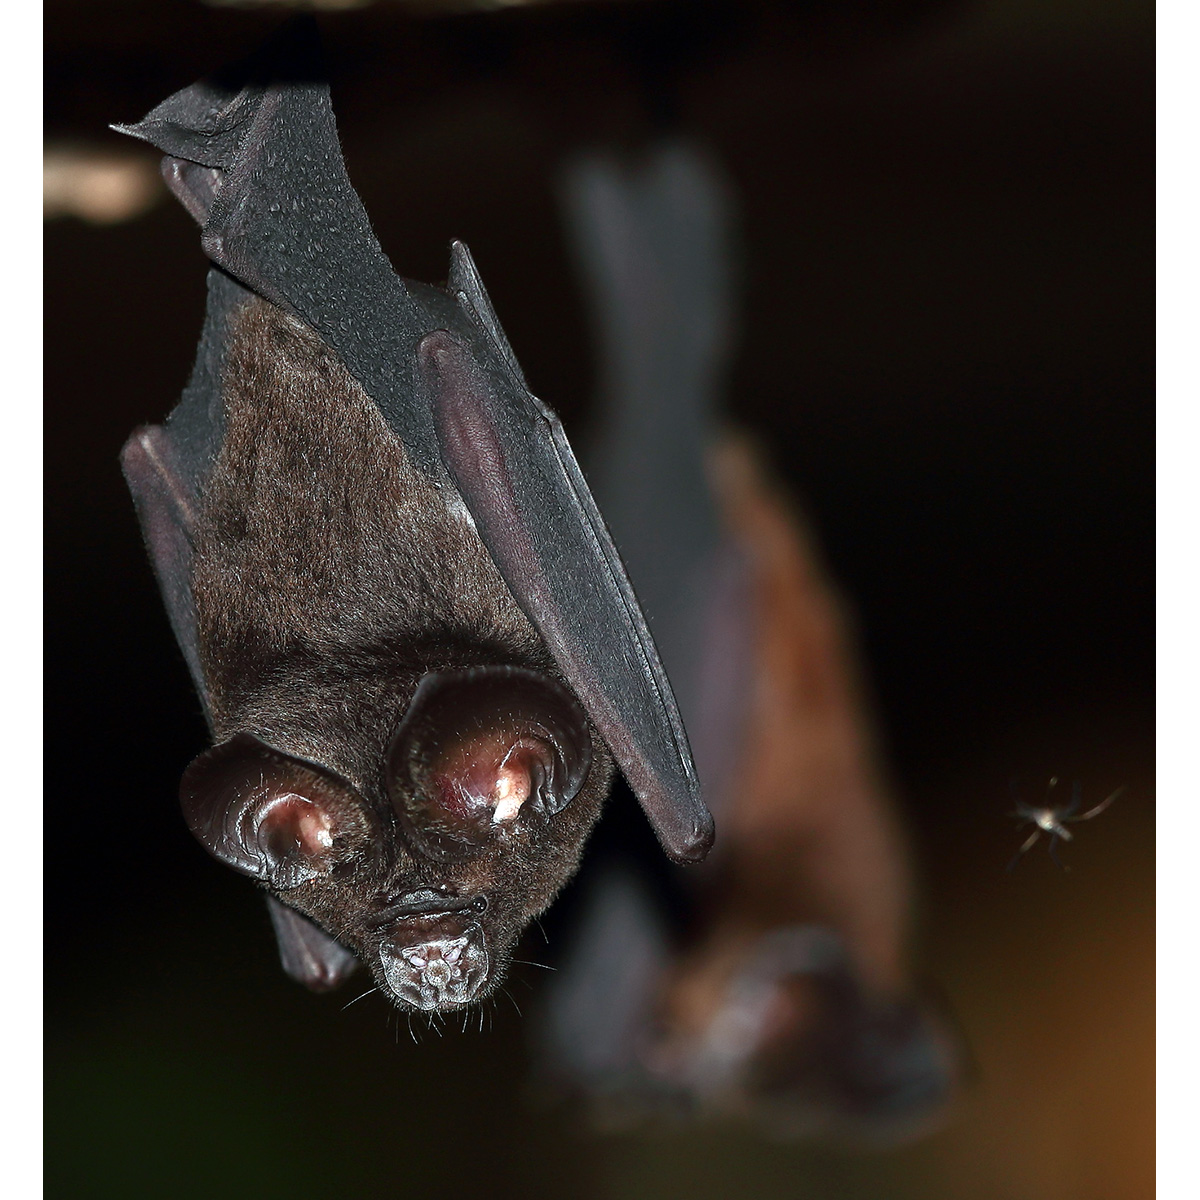 Orbiculus Leaf Nosed Bat (Hipposideros orbiculus) Фото №3